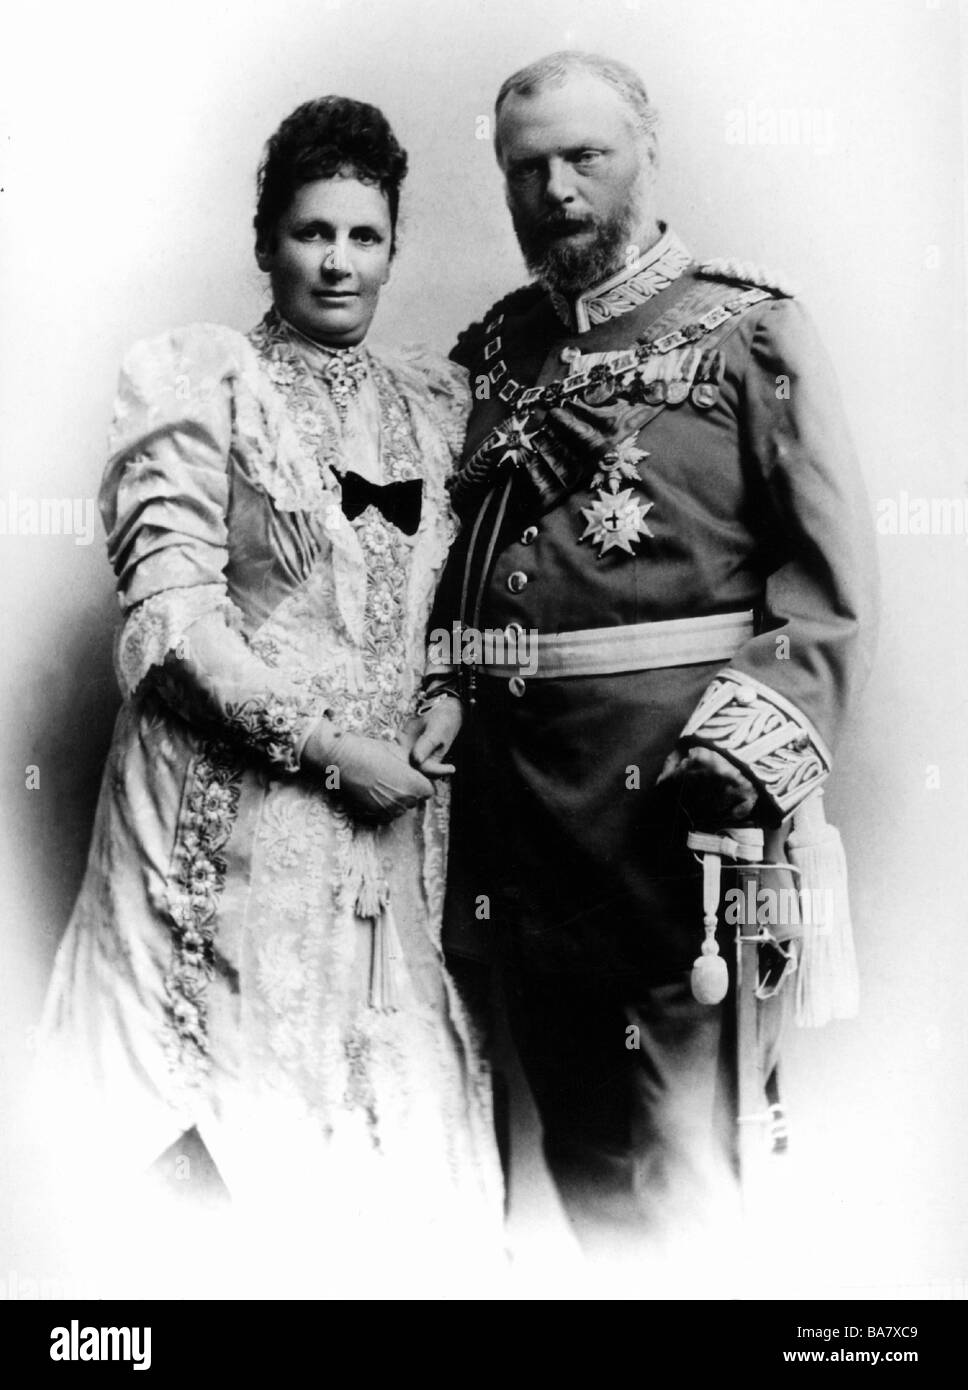 Louis III, 7.1.265 - 18.10.1921, König von Bayern 5.11.1913 - 8.11.199, mit Frau Maria-Theresia von Österreich-Este, Atelier Elvira, München, ca. 1890, Stockfoto